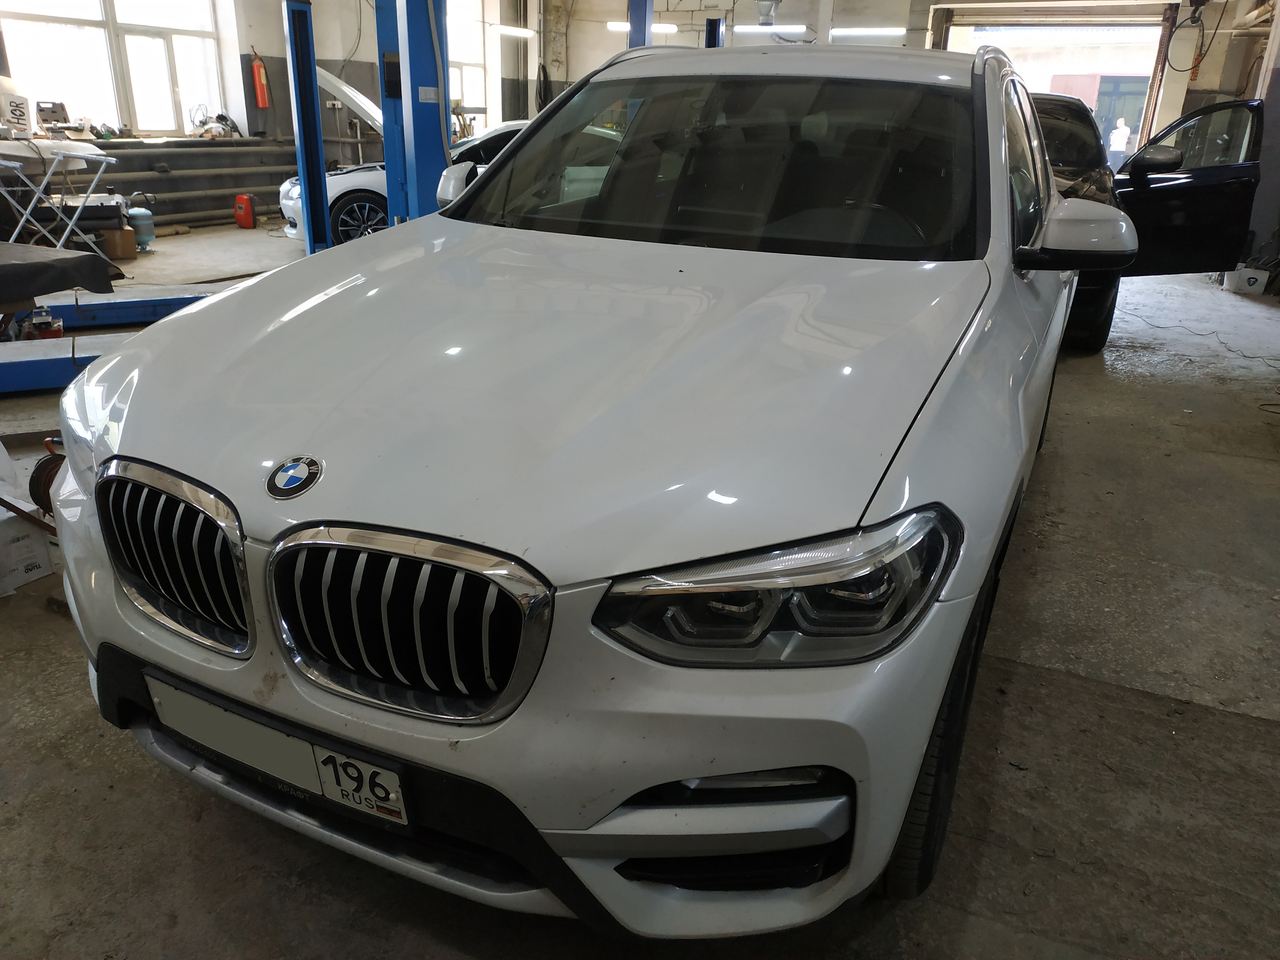 BMW X3 G01 20d 2018, вид спереди